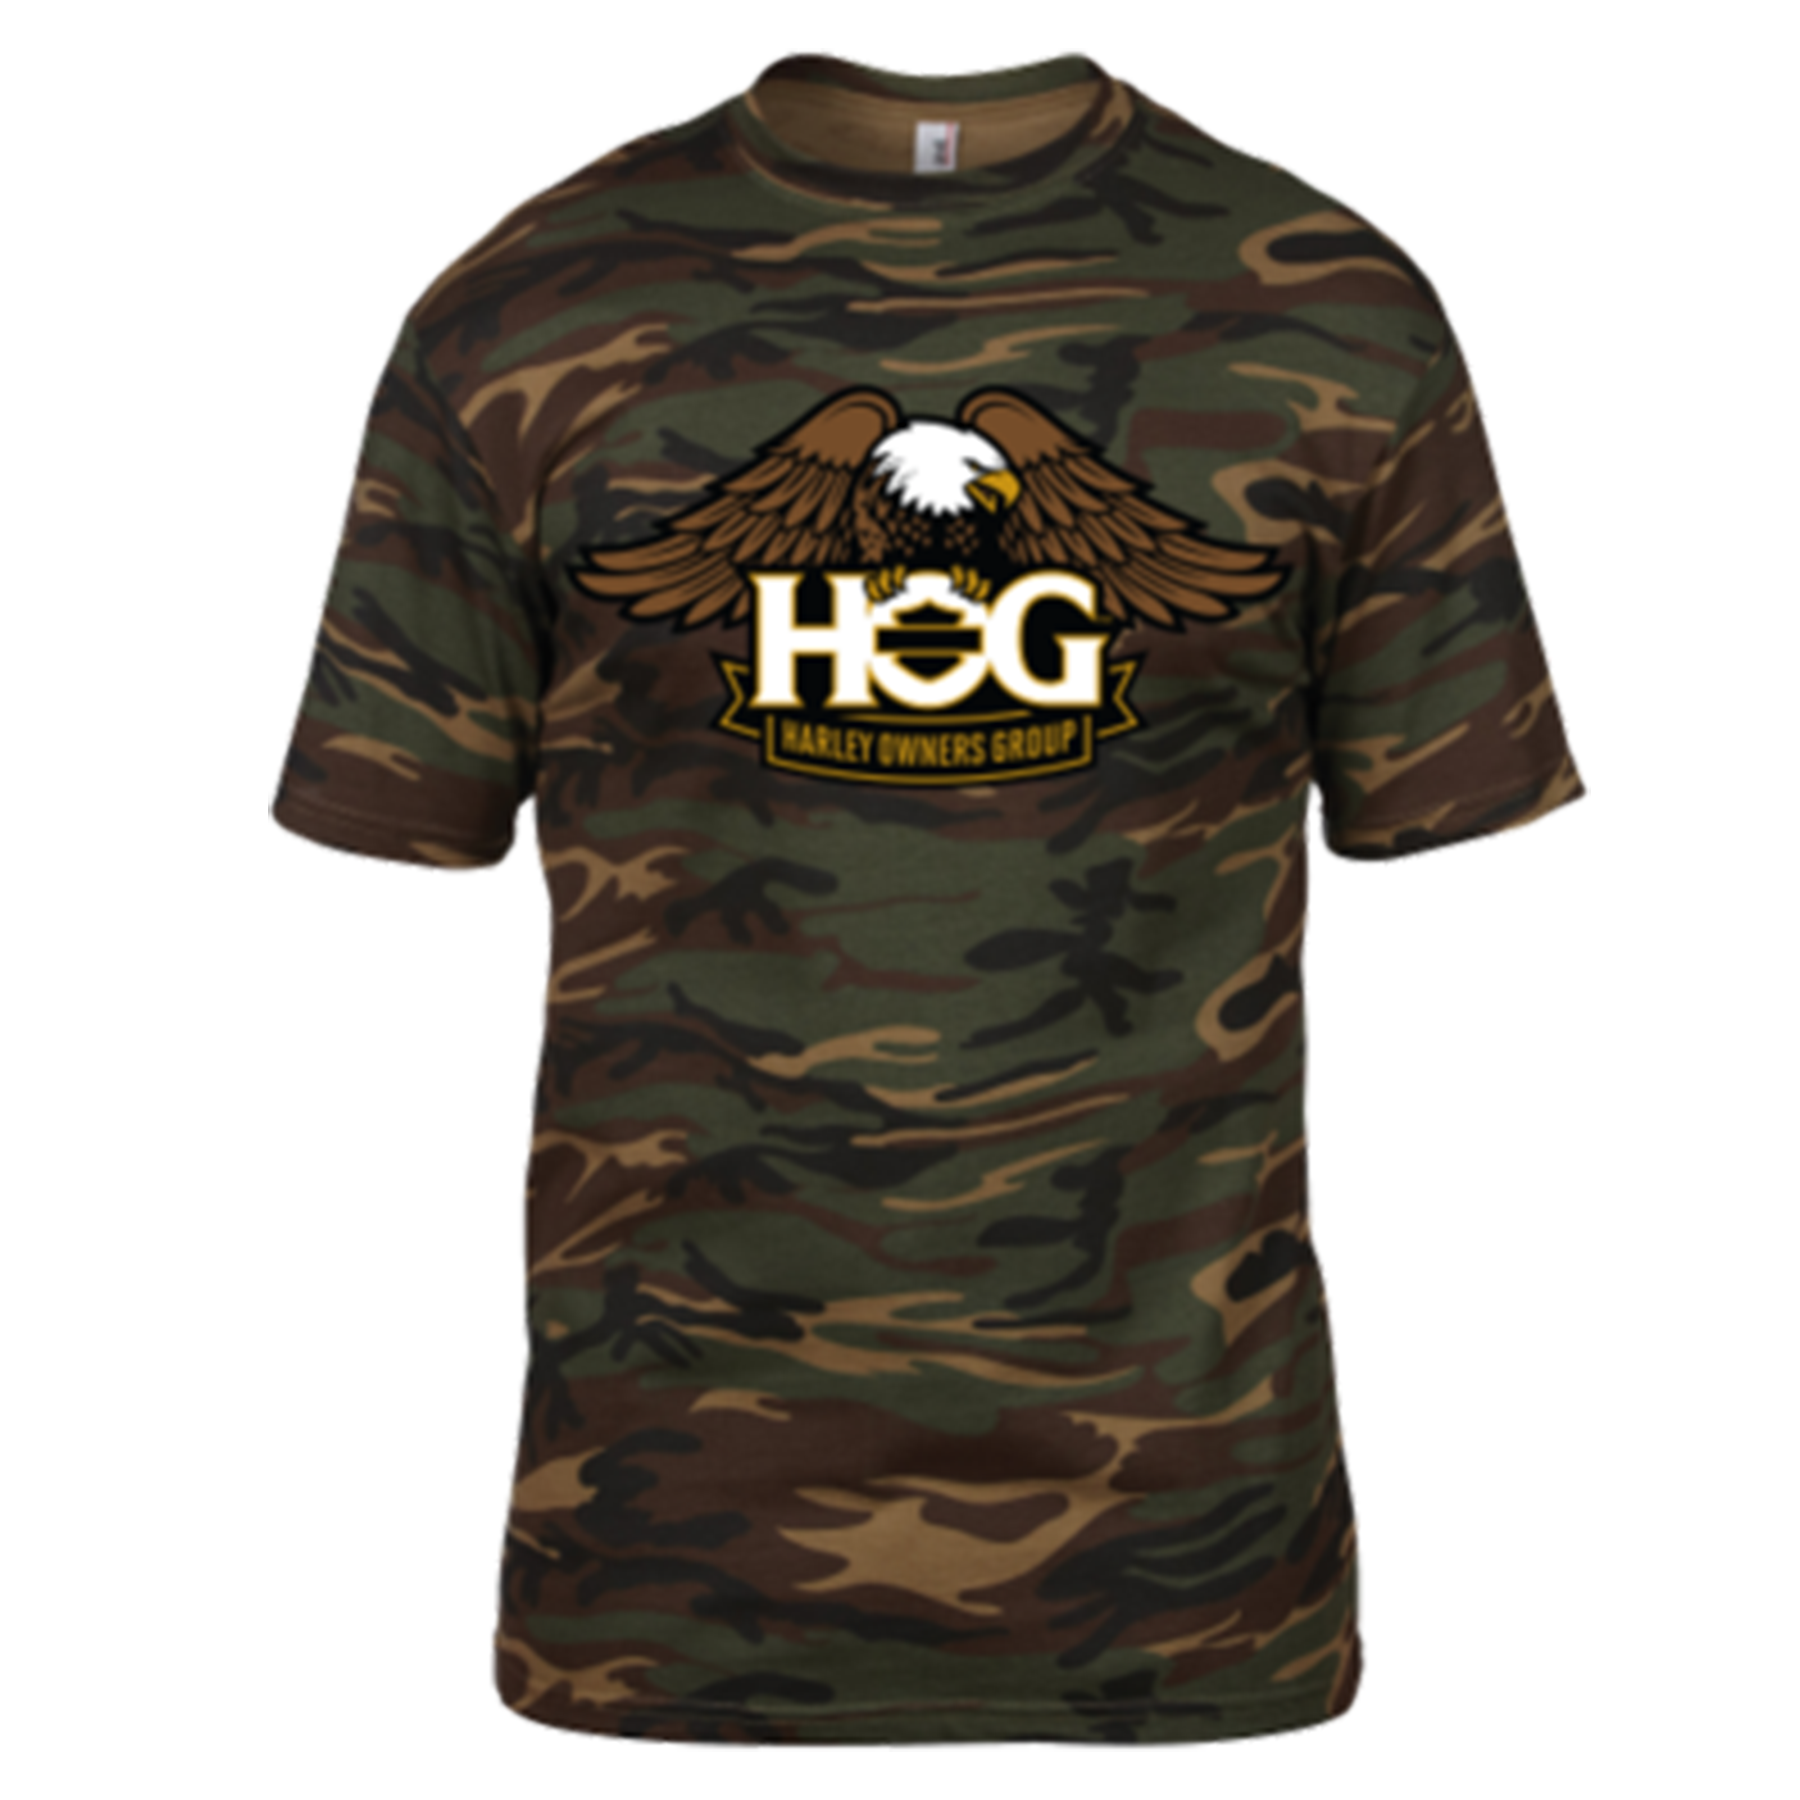 HOG Camo Unisex T-Shirt